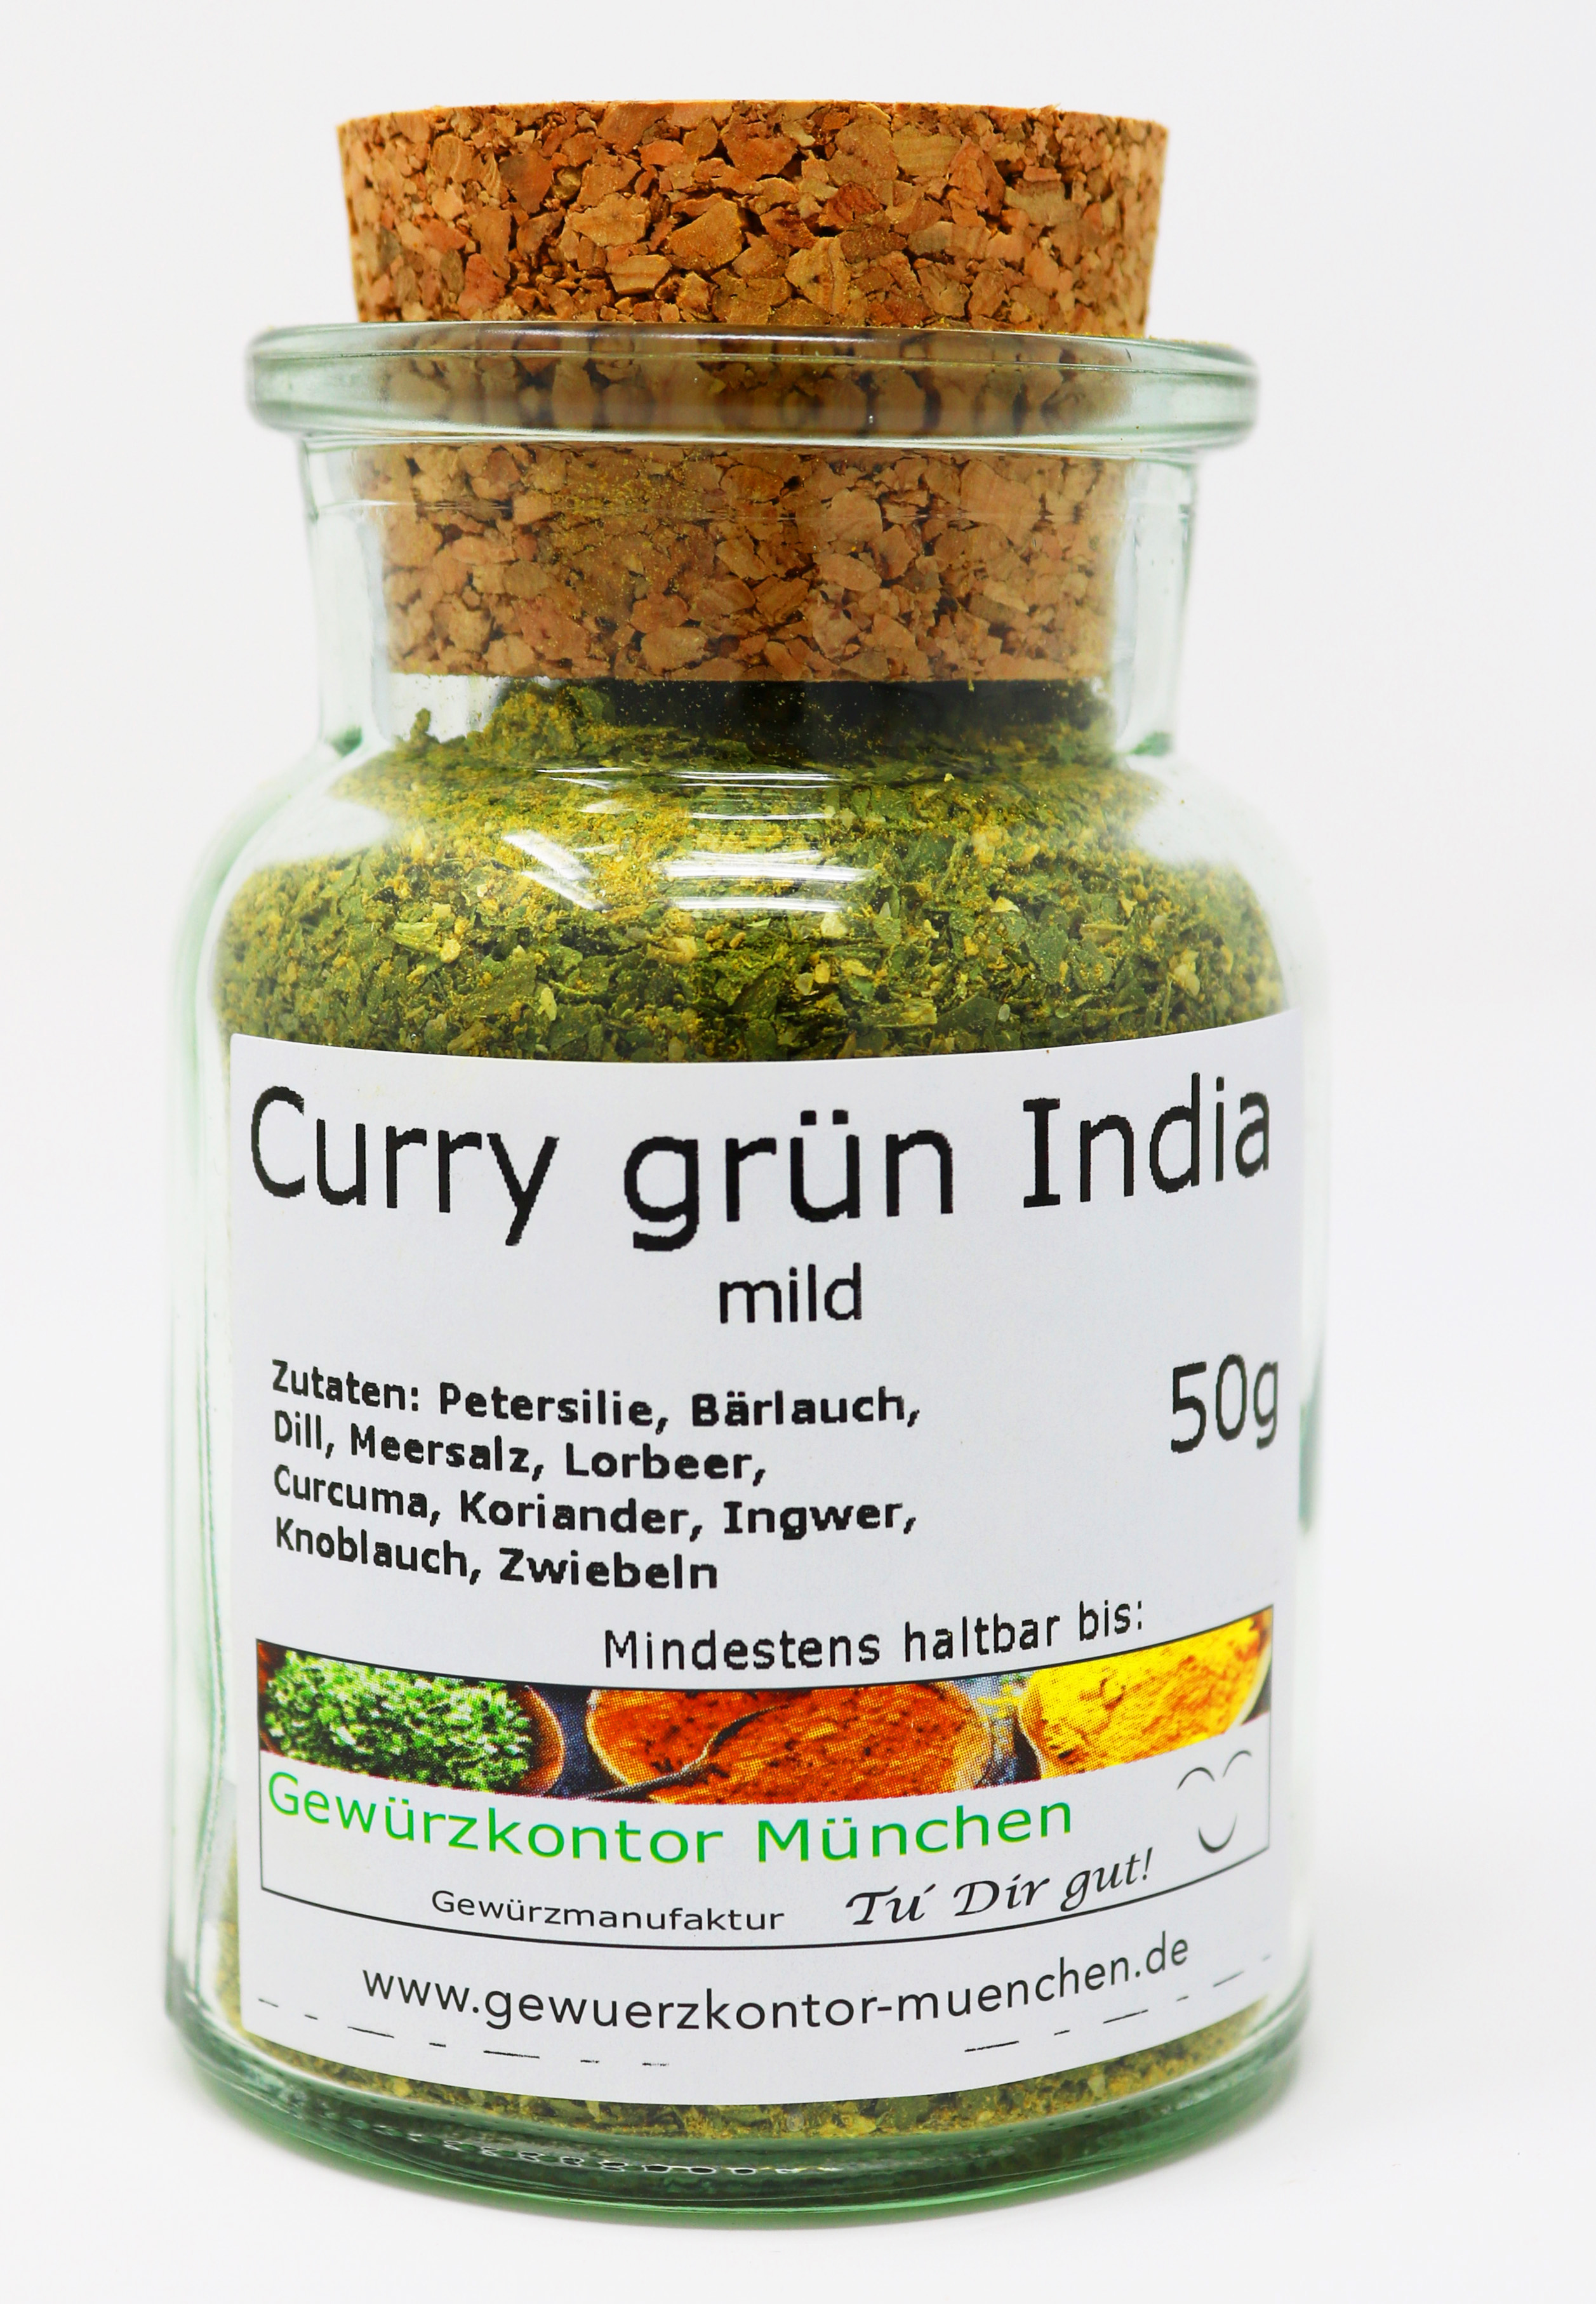 Curry grün India mild 50g im Glas